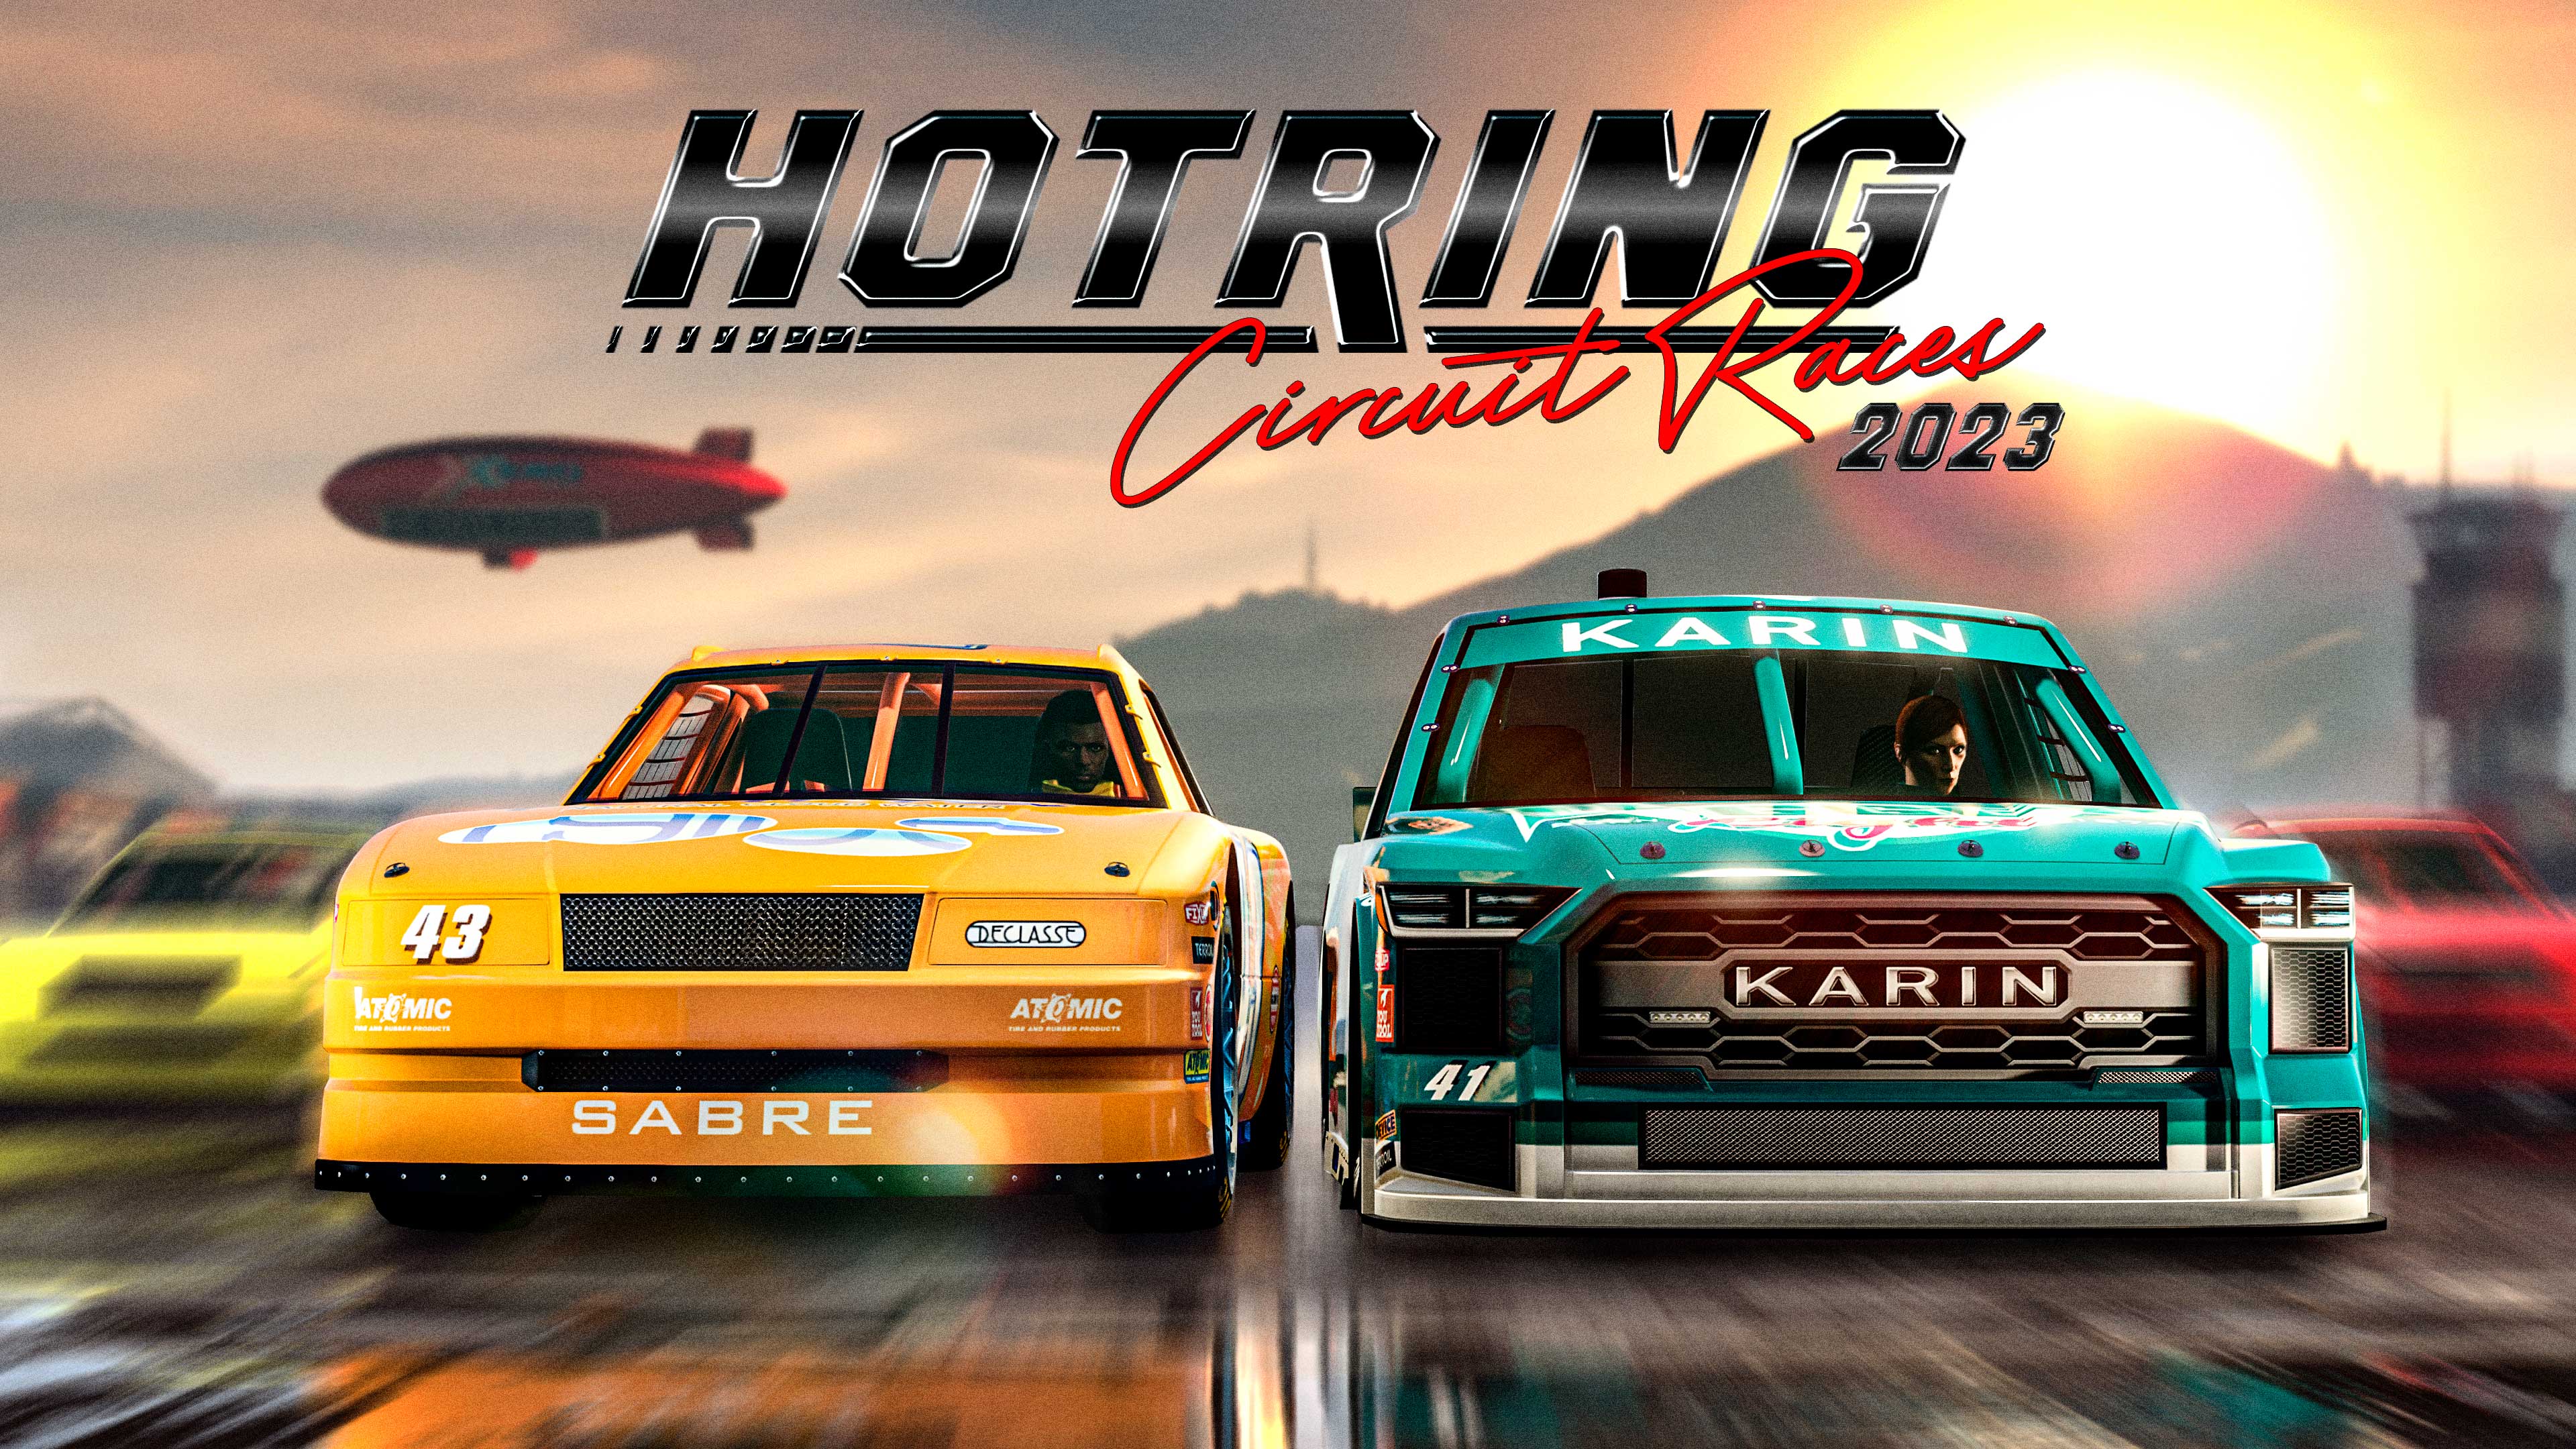 Imagem e logotipo de Corridas dos Circuitos Hotring